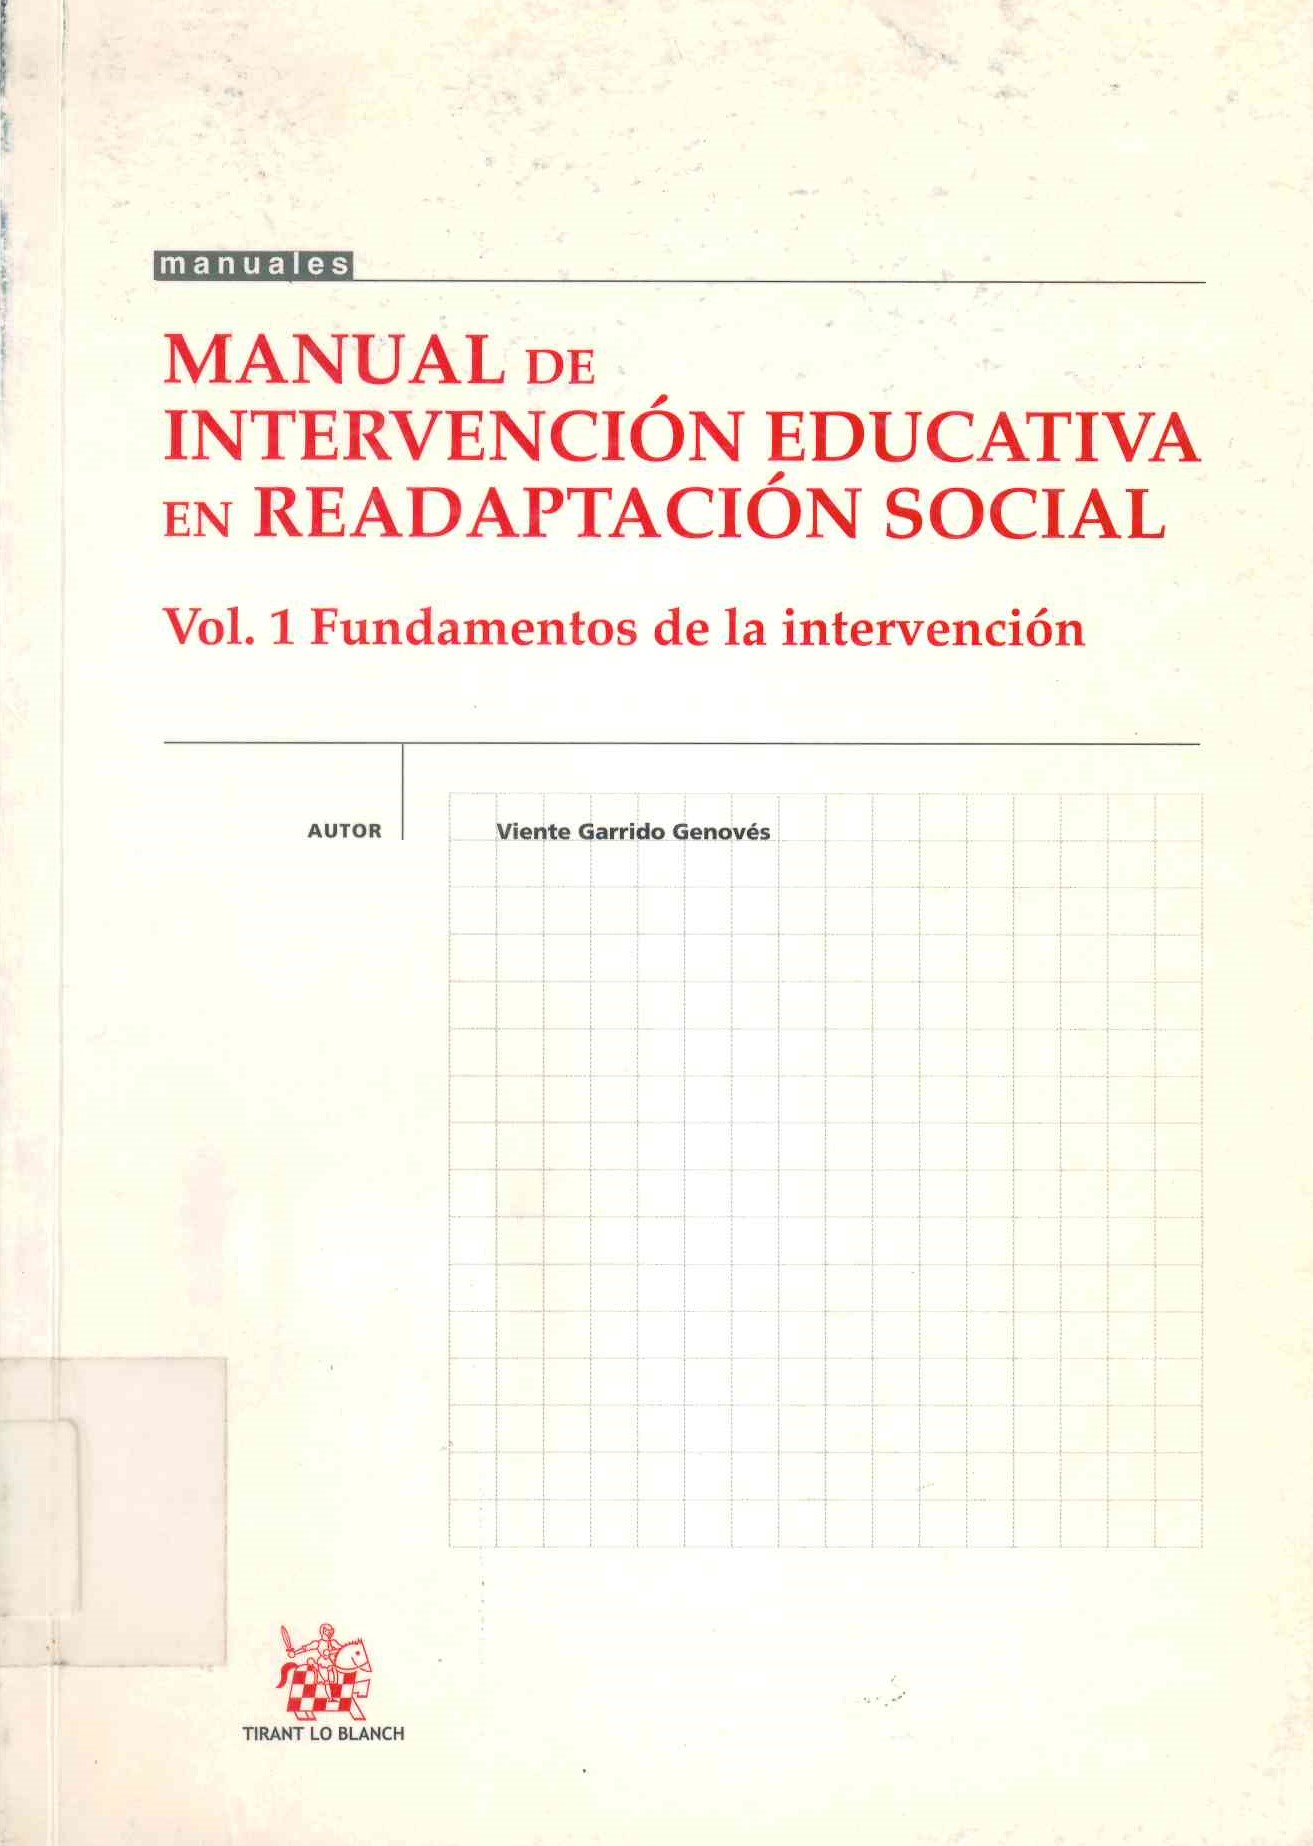 Manual de intervención educativa en readaptación social : fundamentos de la intervención